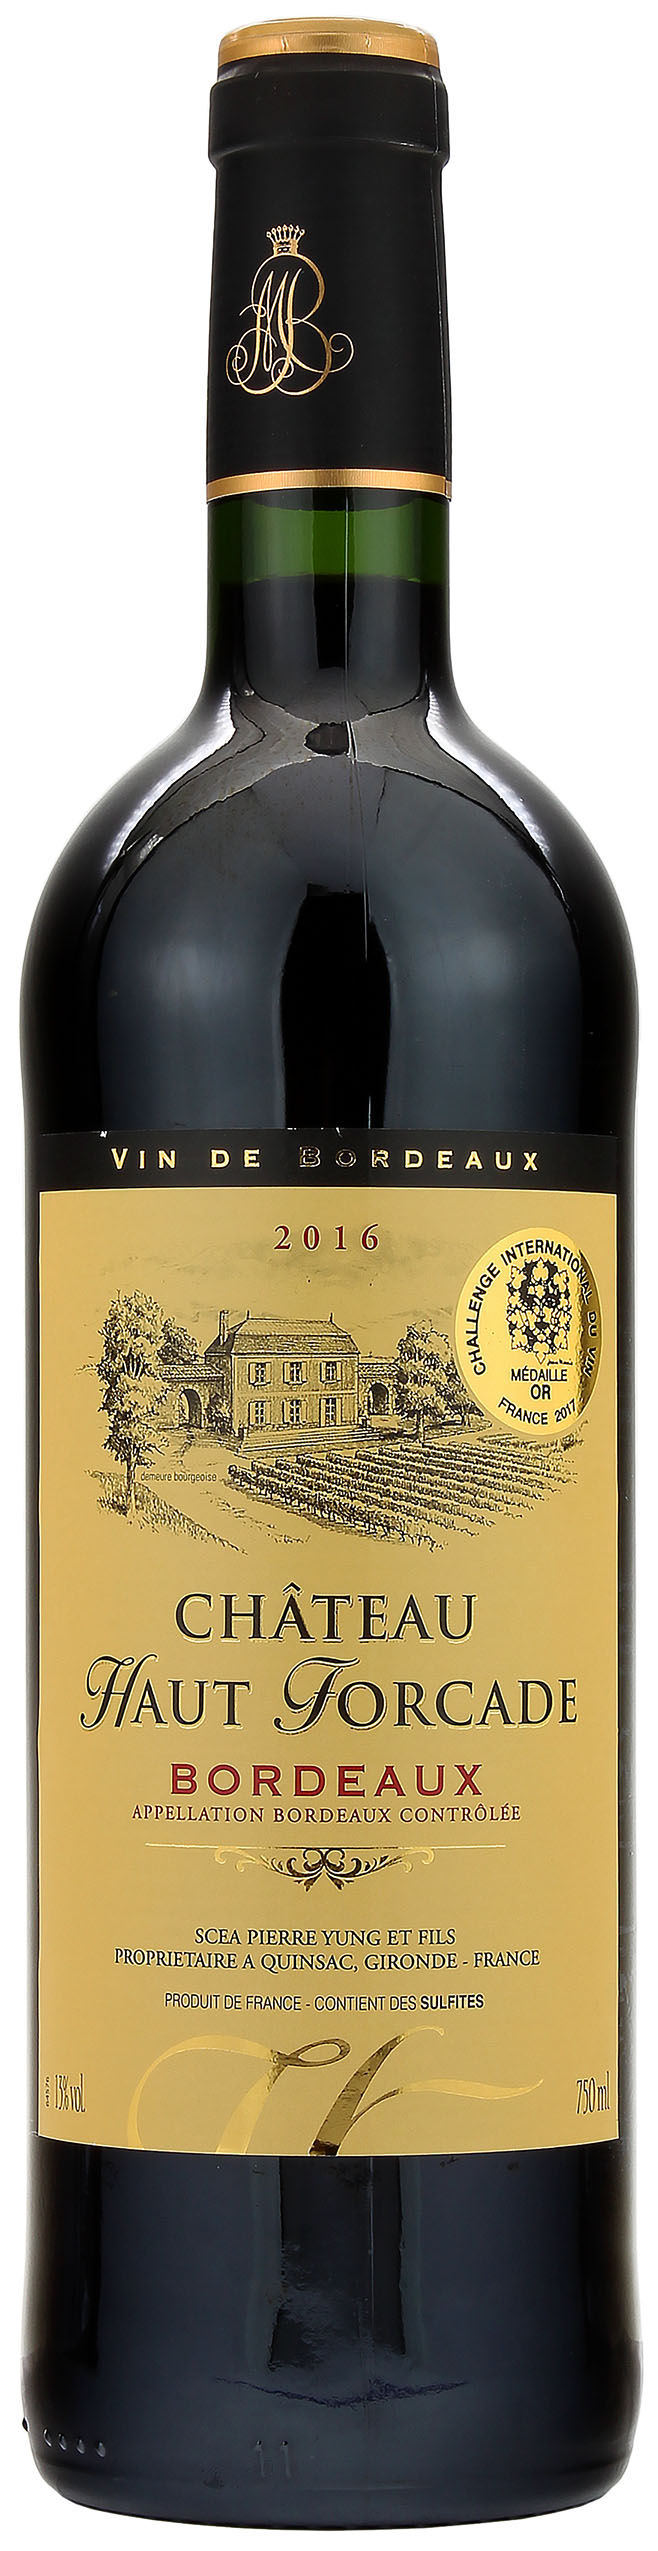 Château Haut Forcade Bordeaux rouge AOC 2016 13.0% 0,75l